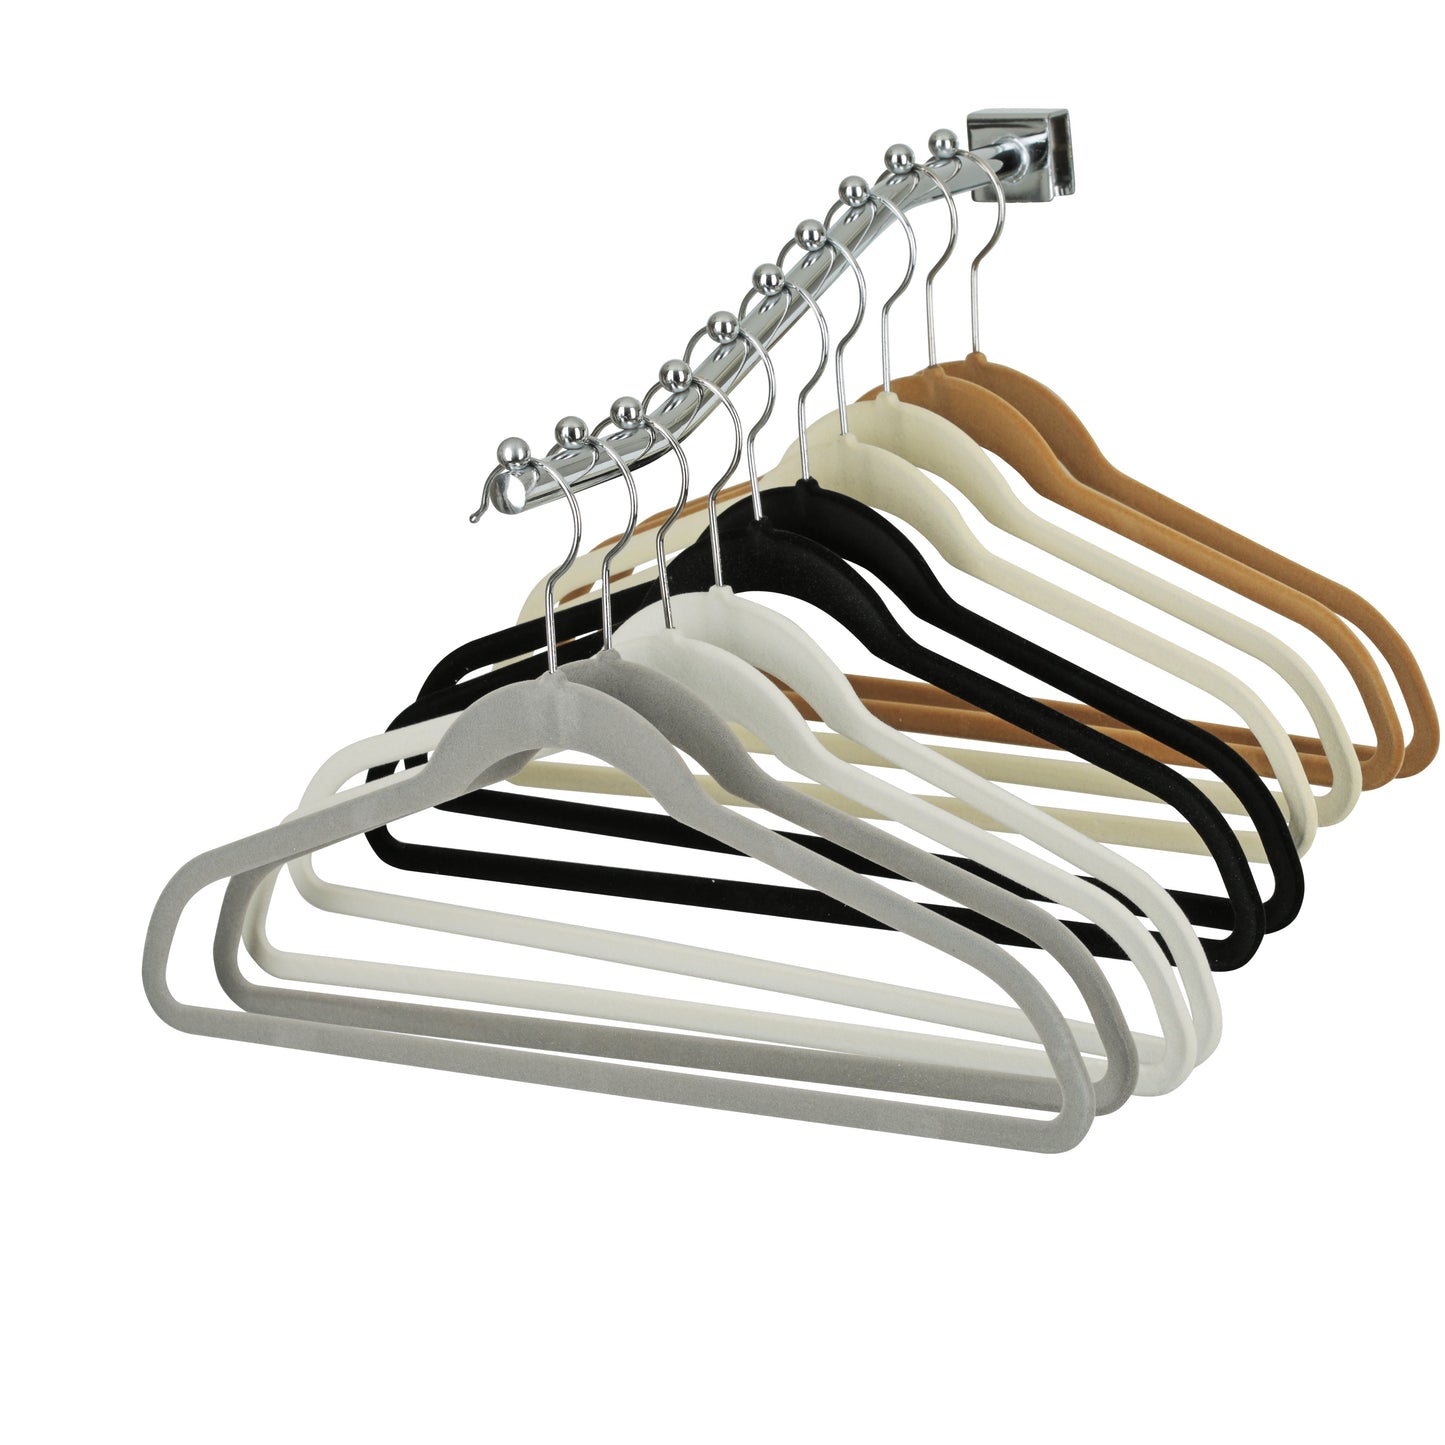 43cm Slim-Line Ivory Velvet Coat Hanger with Chrome Hook Sold in Bundles of 20/50/100 - Rackshop Australia